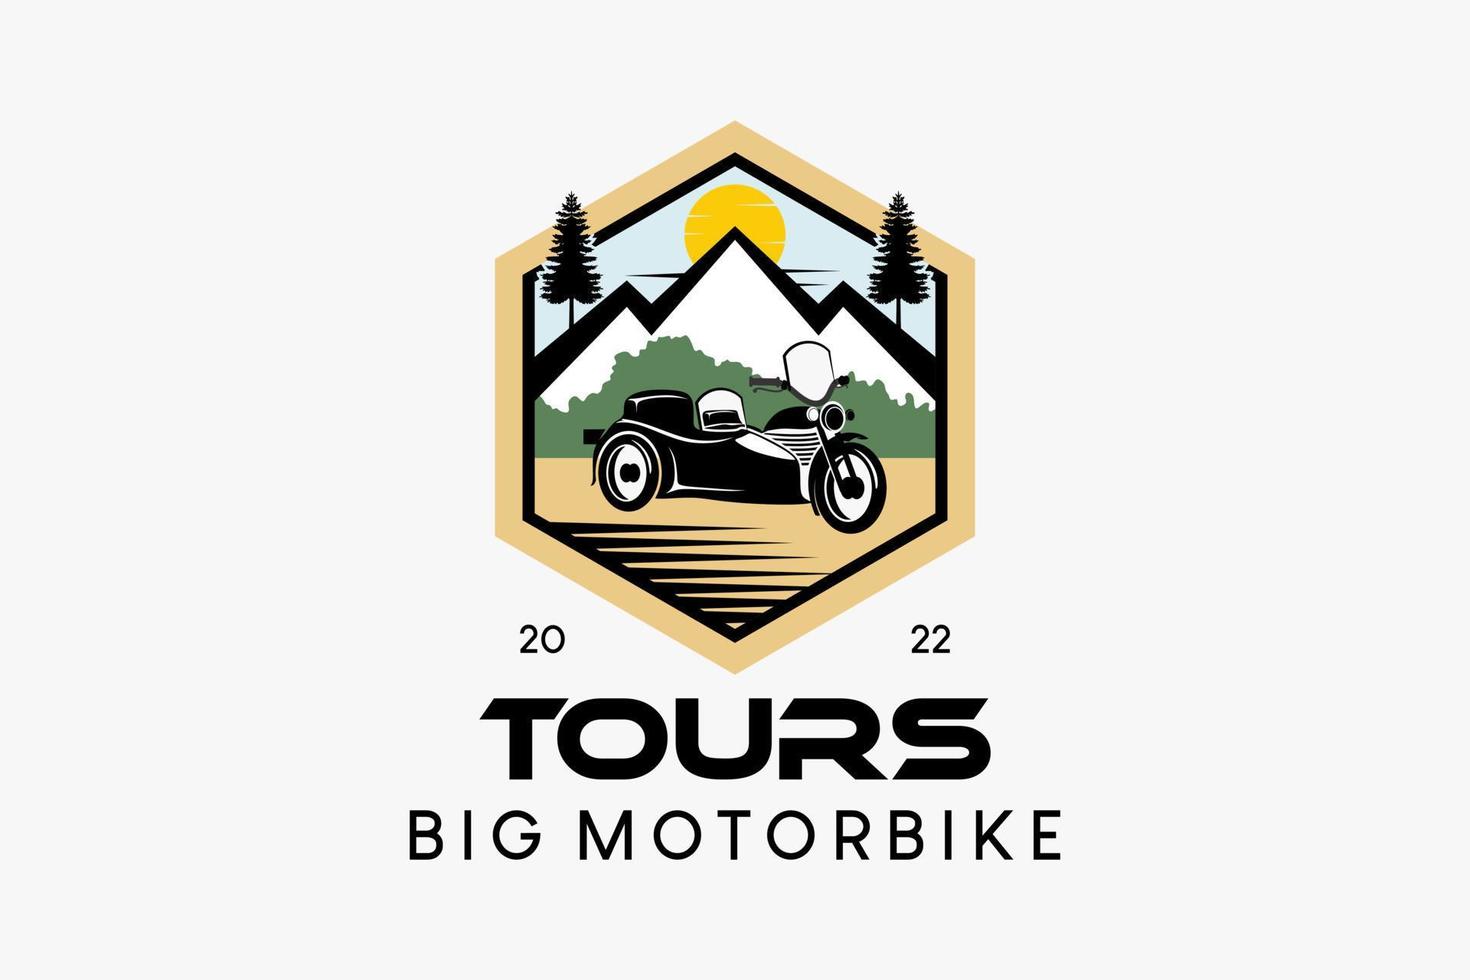 großes Fahrrad-Beiwagen-Logo-Design für Reisen oder Abenteuer, große Motorrad-Silhouette gemischt mit der Natur in einem Sechseck vektor